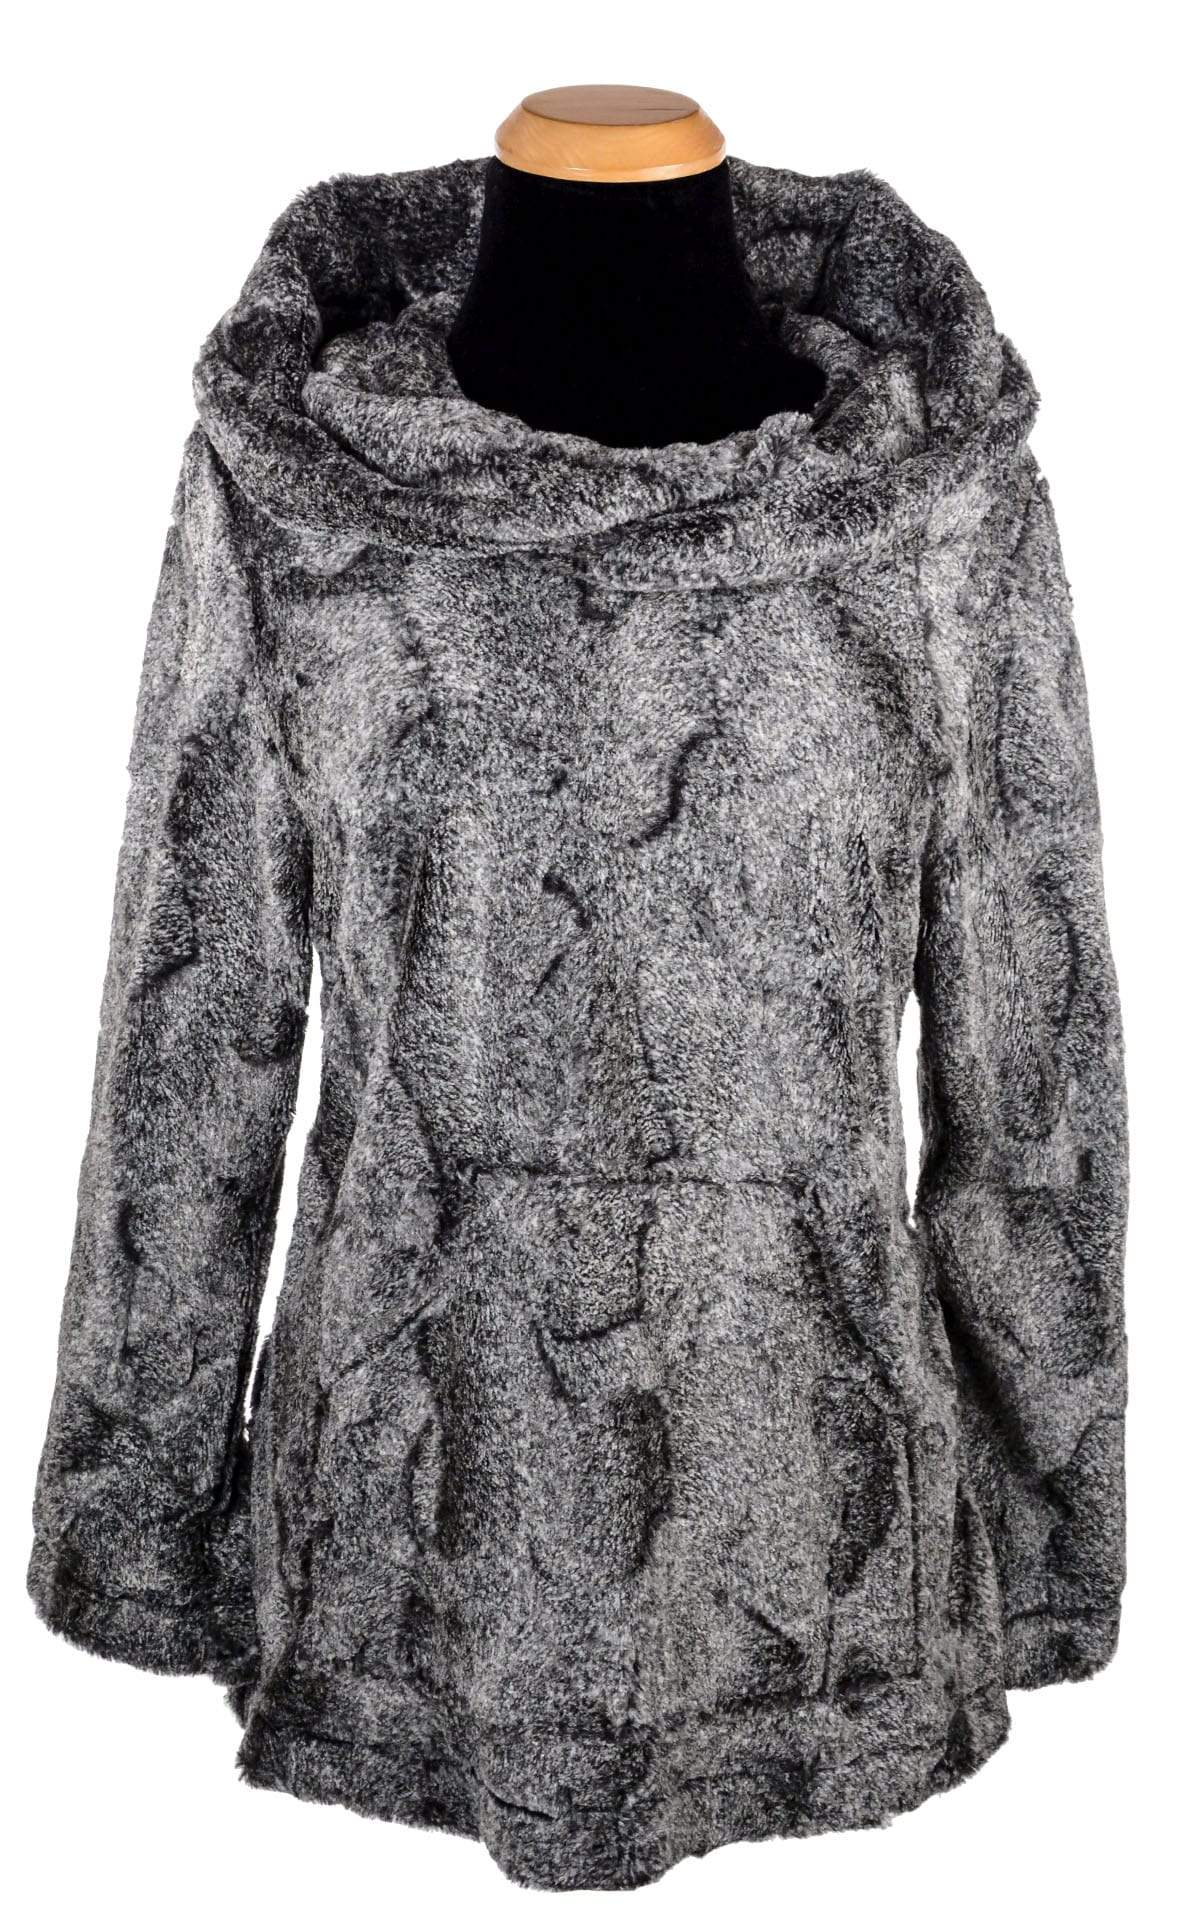 Hooded Lounger - Luxury Faux Fur in Nimbus